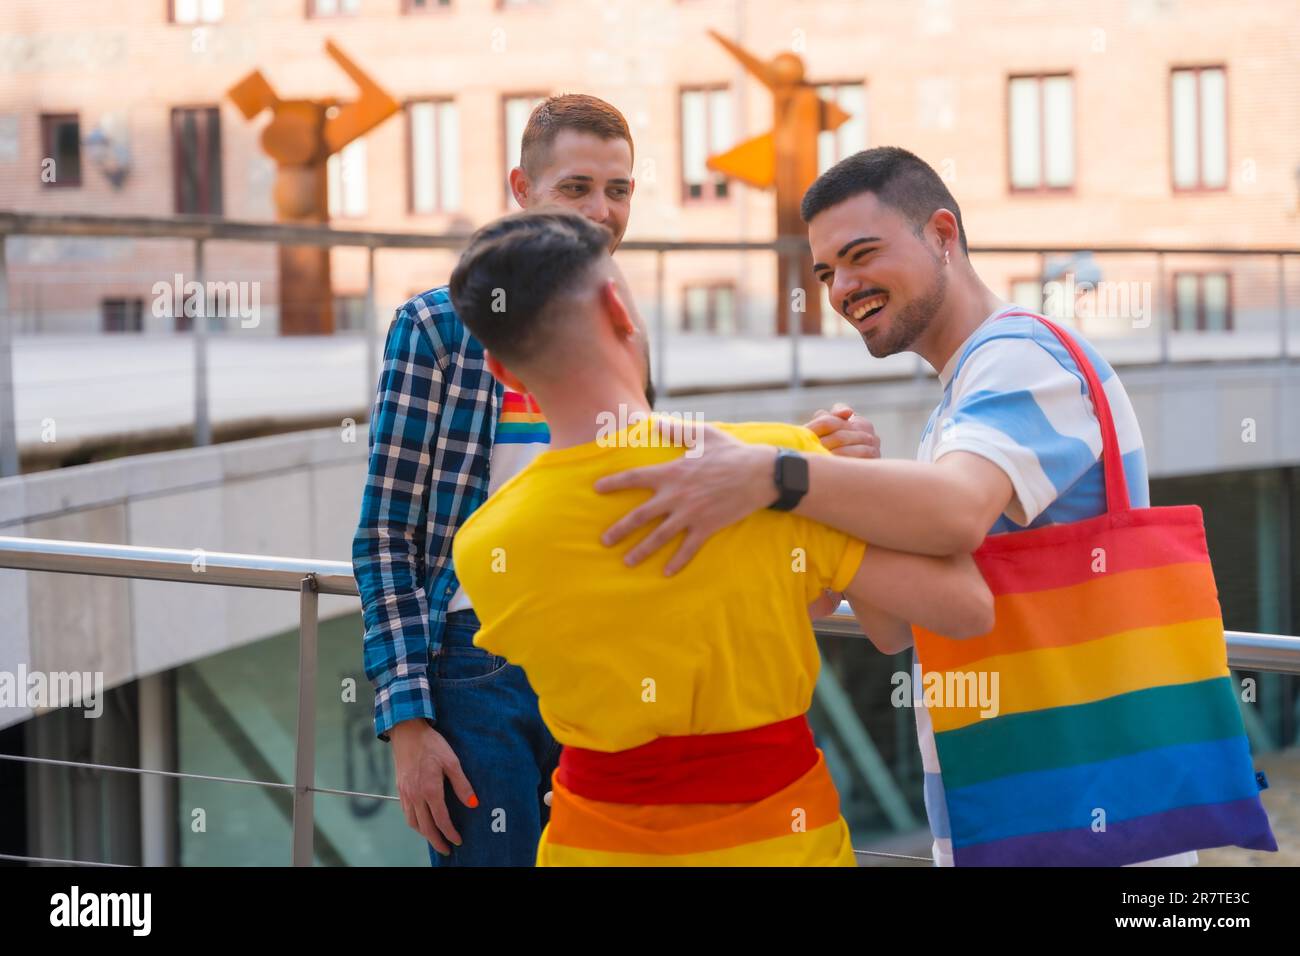 Freunde winken und umarmen sich bei der Demonstration mit den Regenbogenflaggen, Schwulenstolz-Party in der Stadt, lgbt Concept Stockfoto